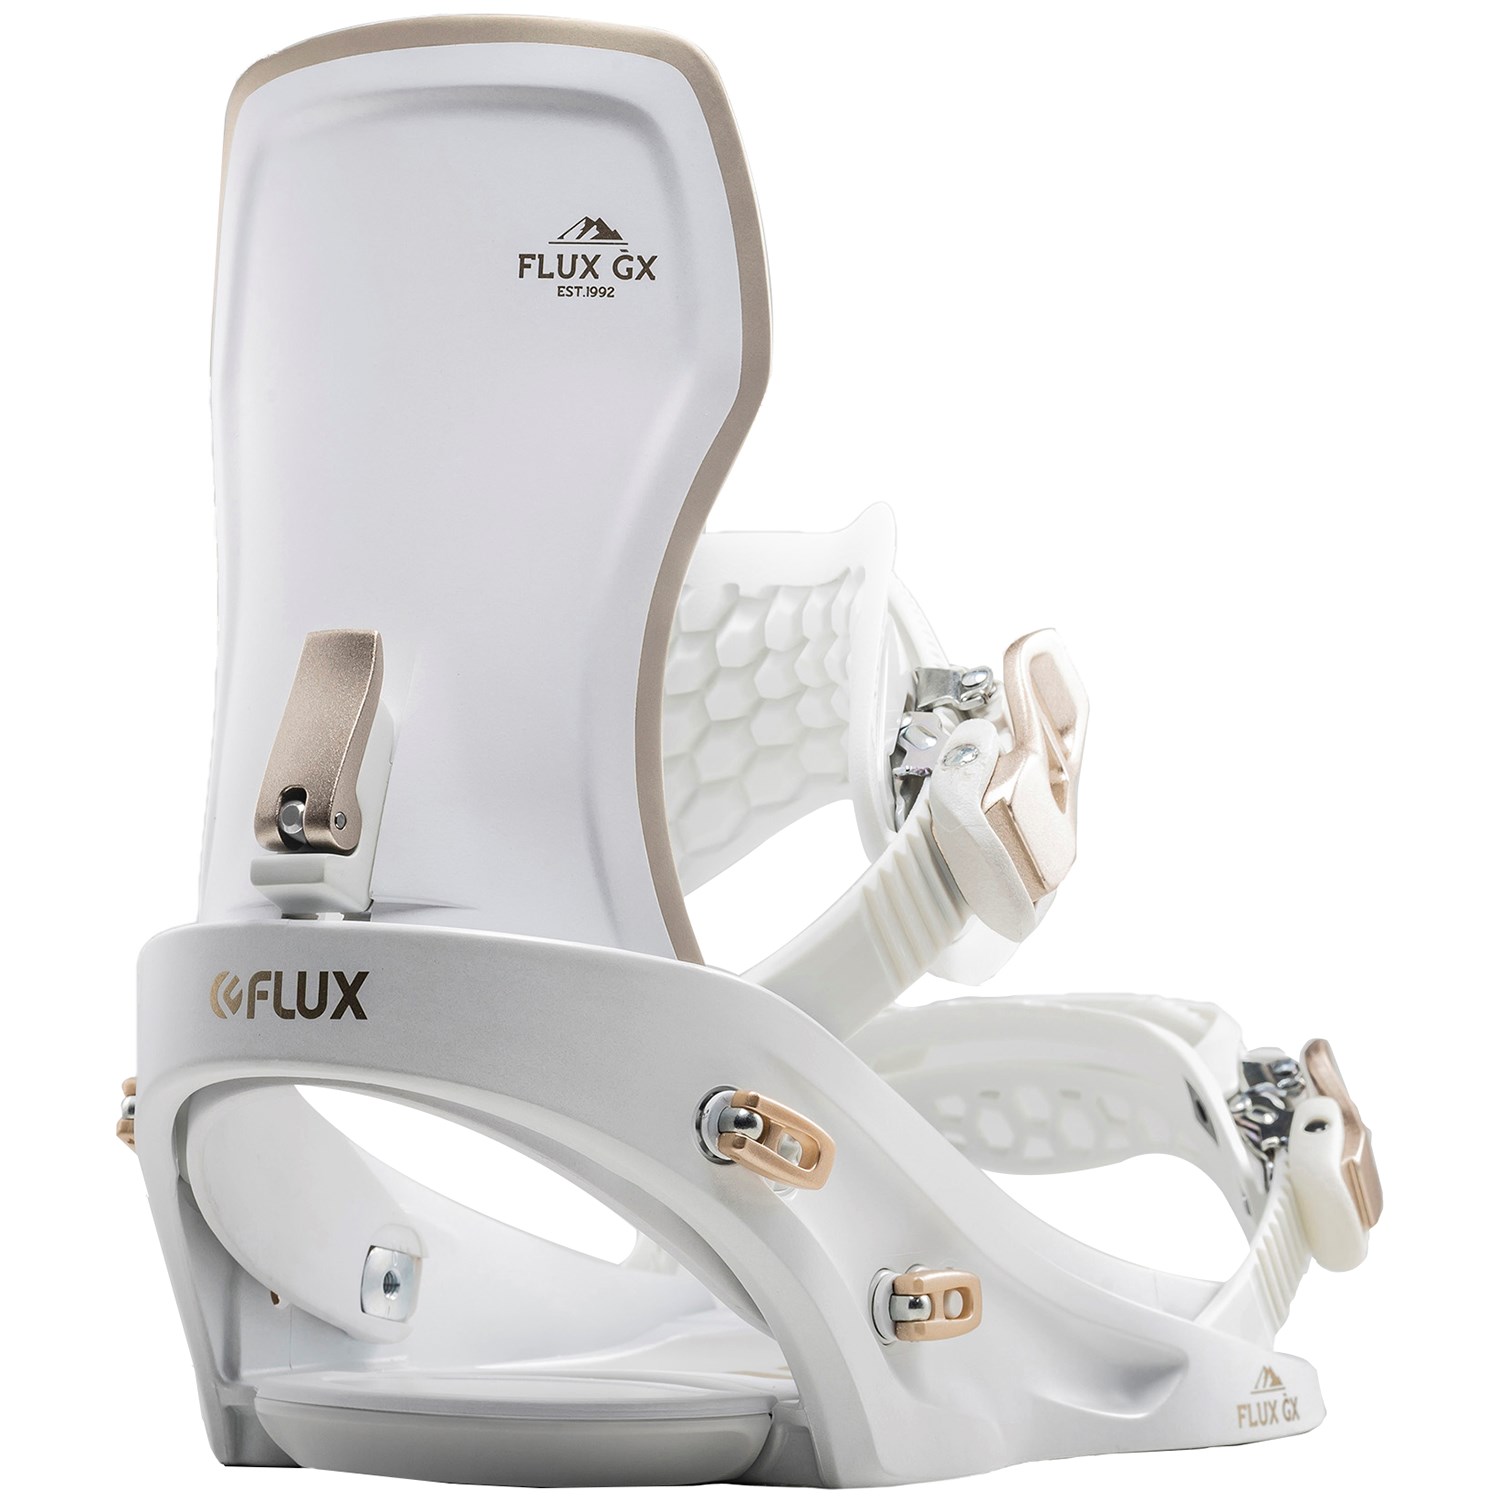 Flux GX Snowboard Bindings - Women's 2020 | evo